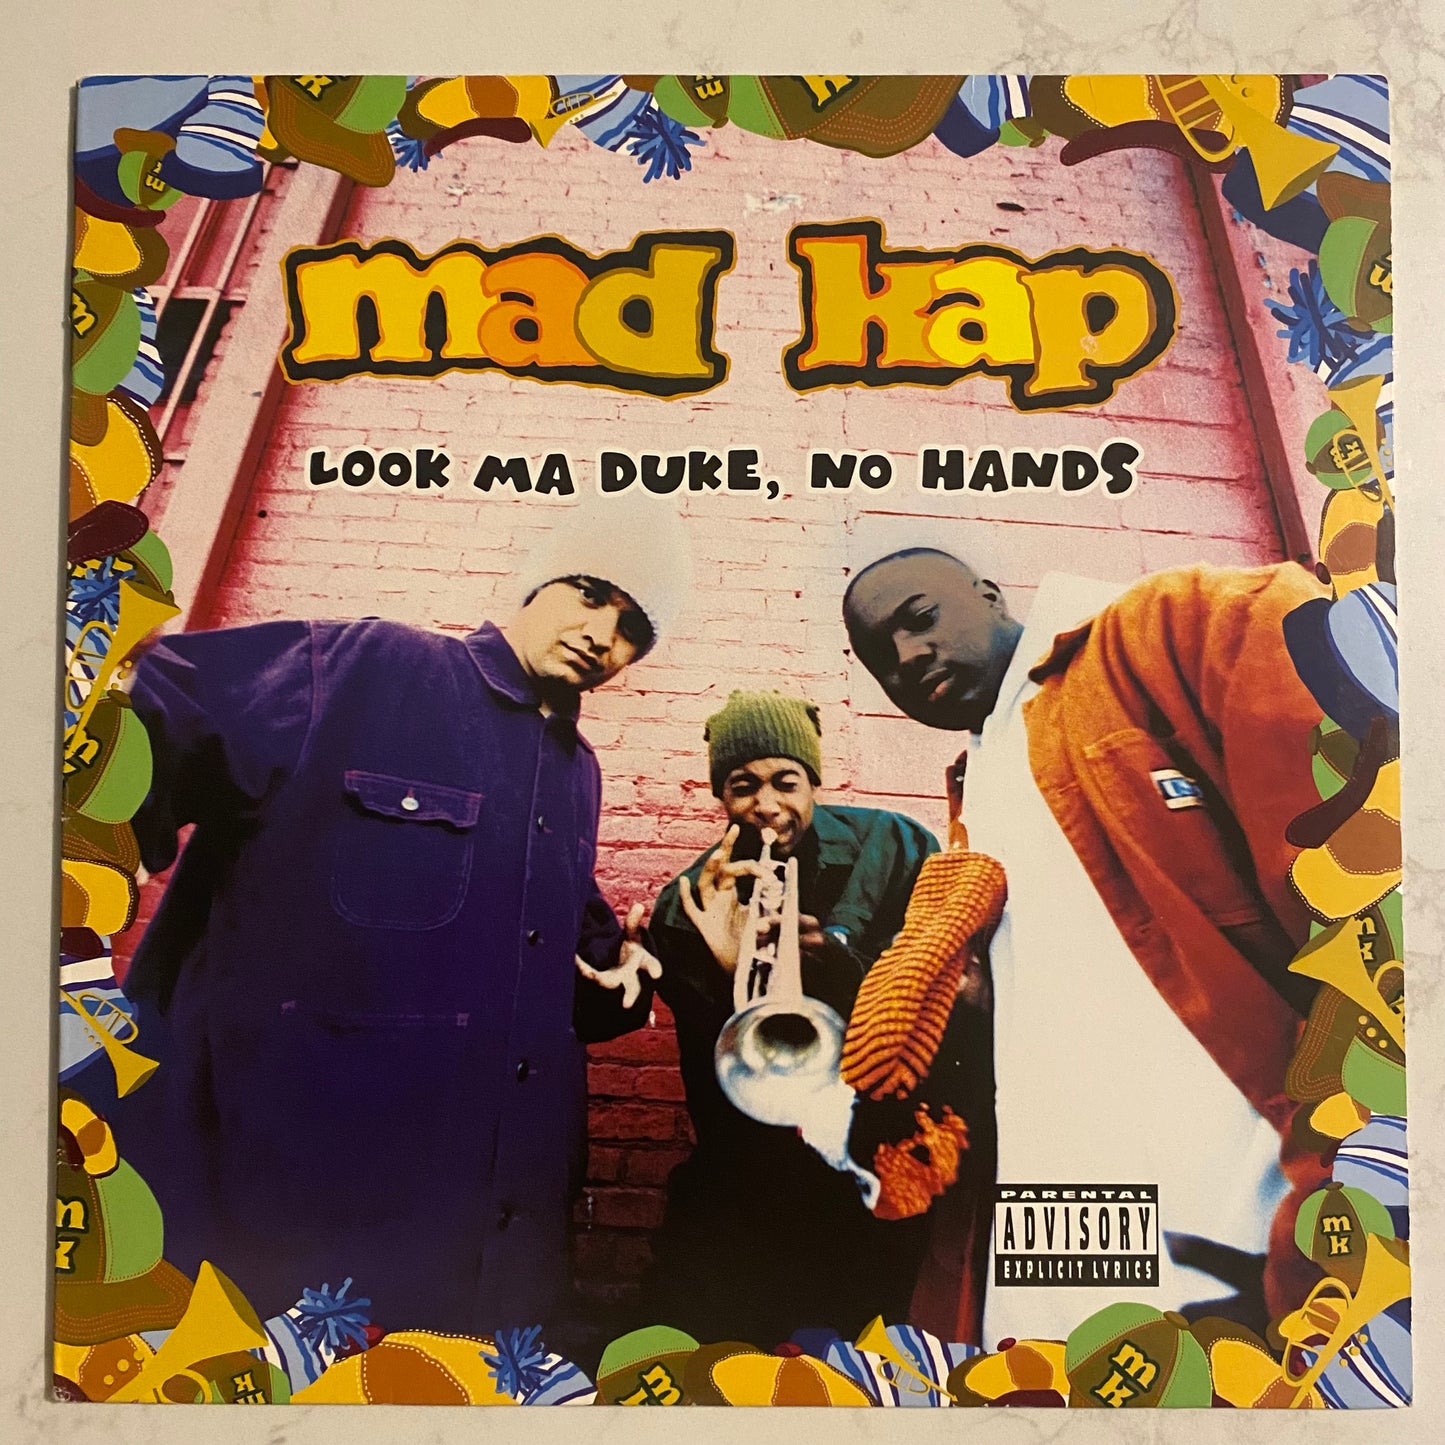 Mad Kap - Look Ma Duke, No Hands (LP, Album). HIP-HOP